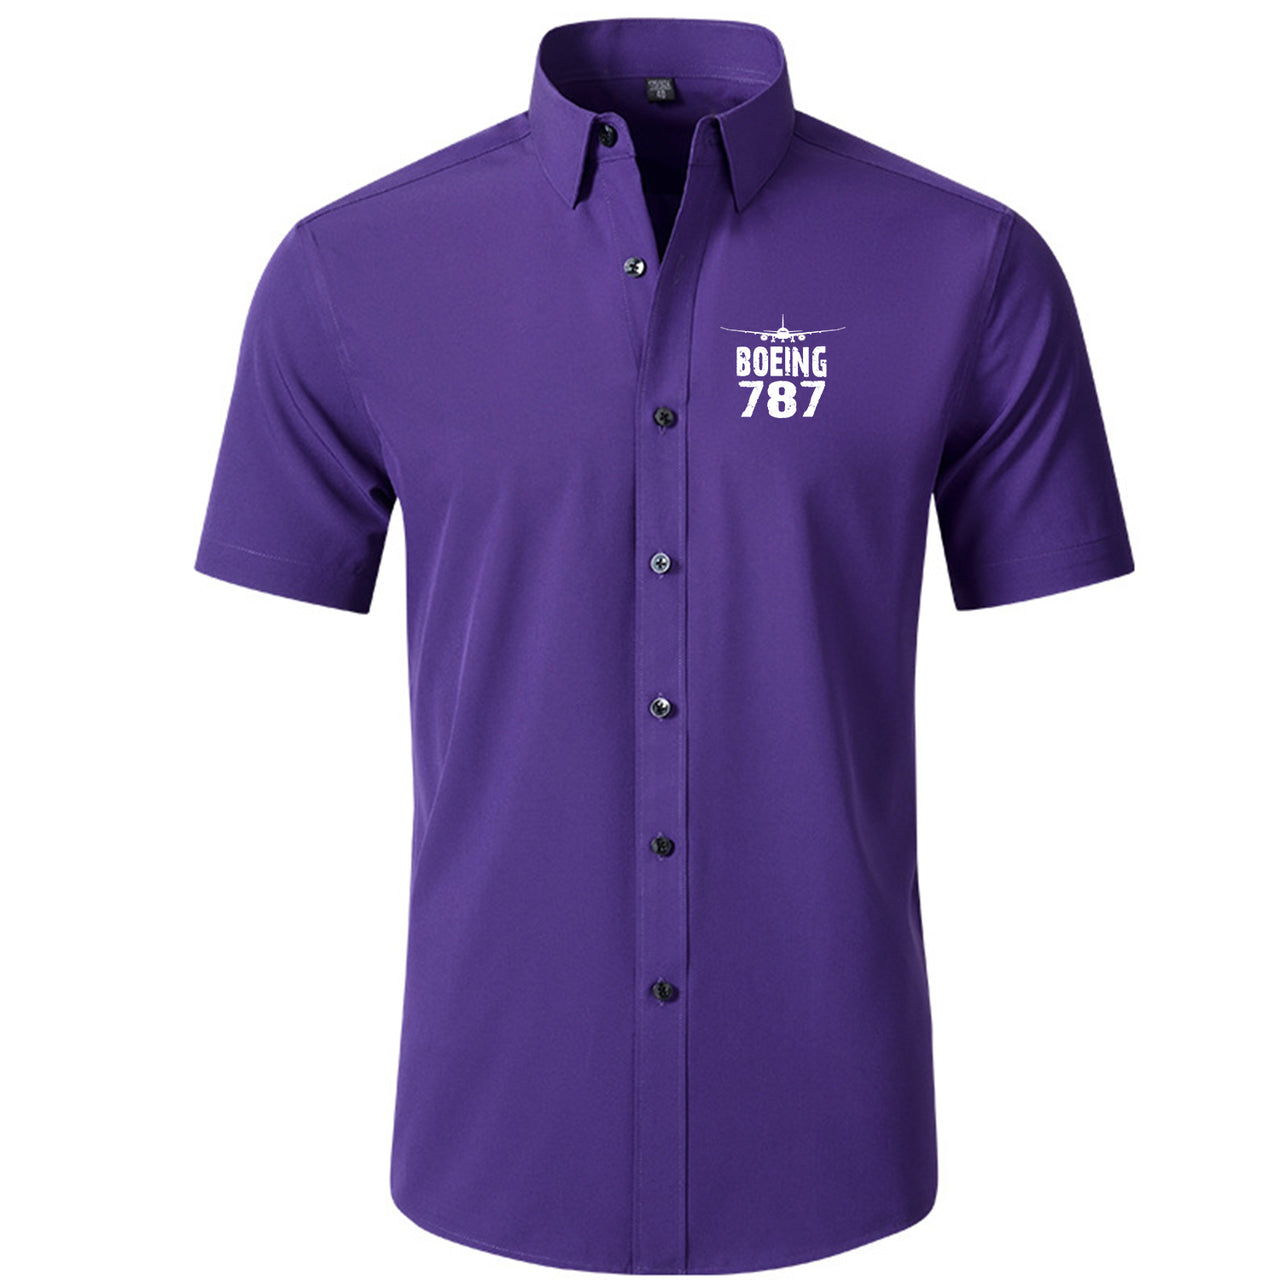 Boeing 787 & Plane Designed Short Sleeve Shirts